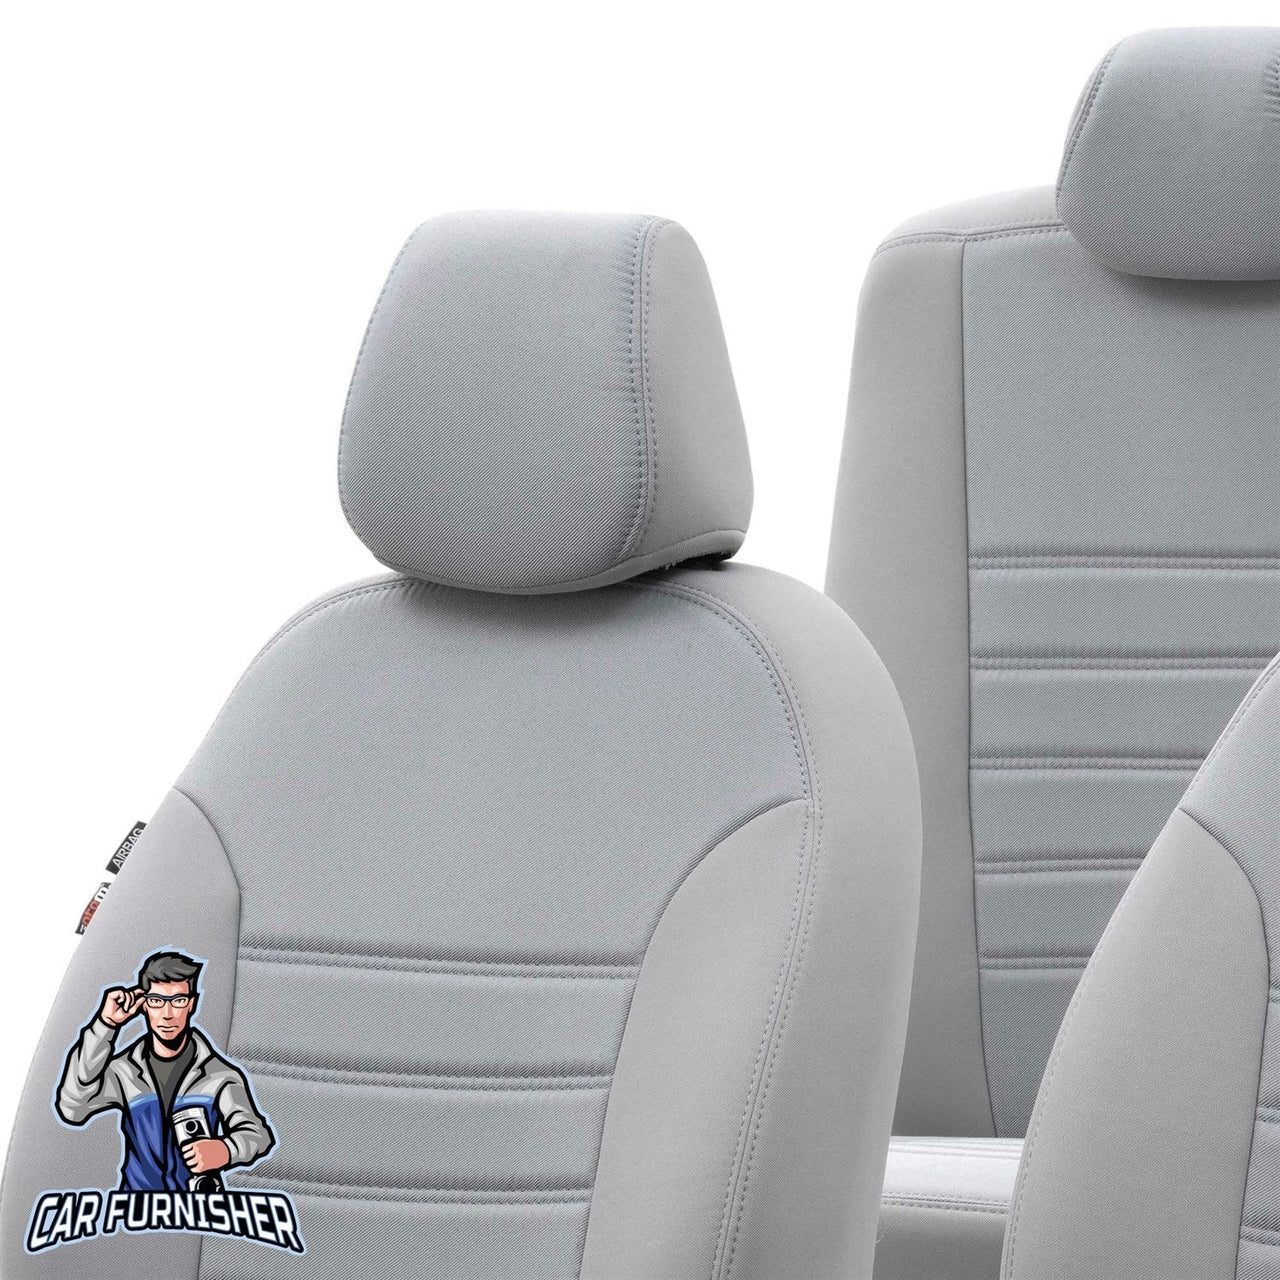 Rover 75 Seat Covers Original Jacquard Design Light Gray Jacquard Fabric